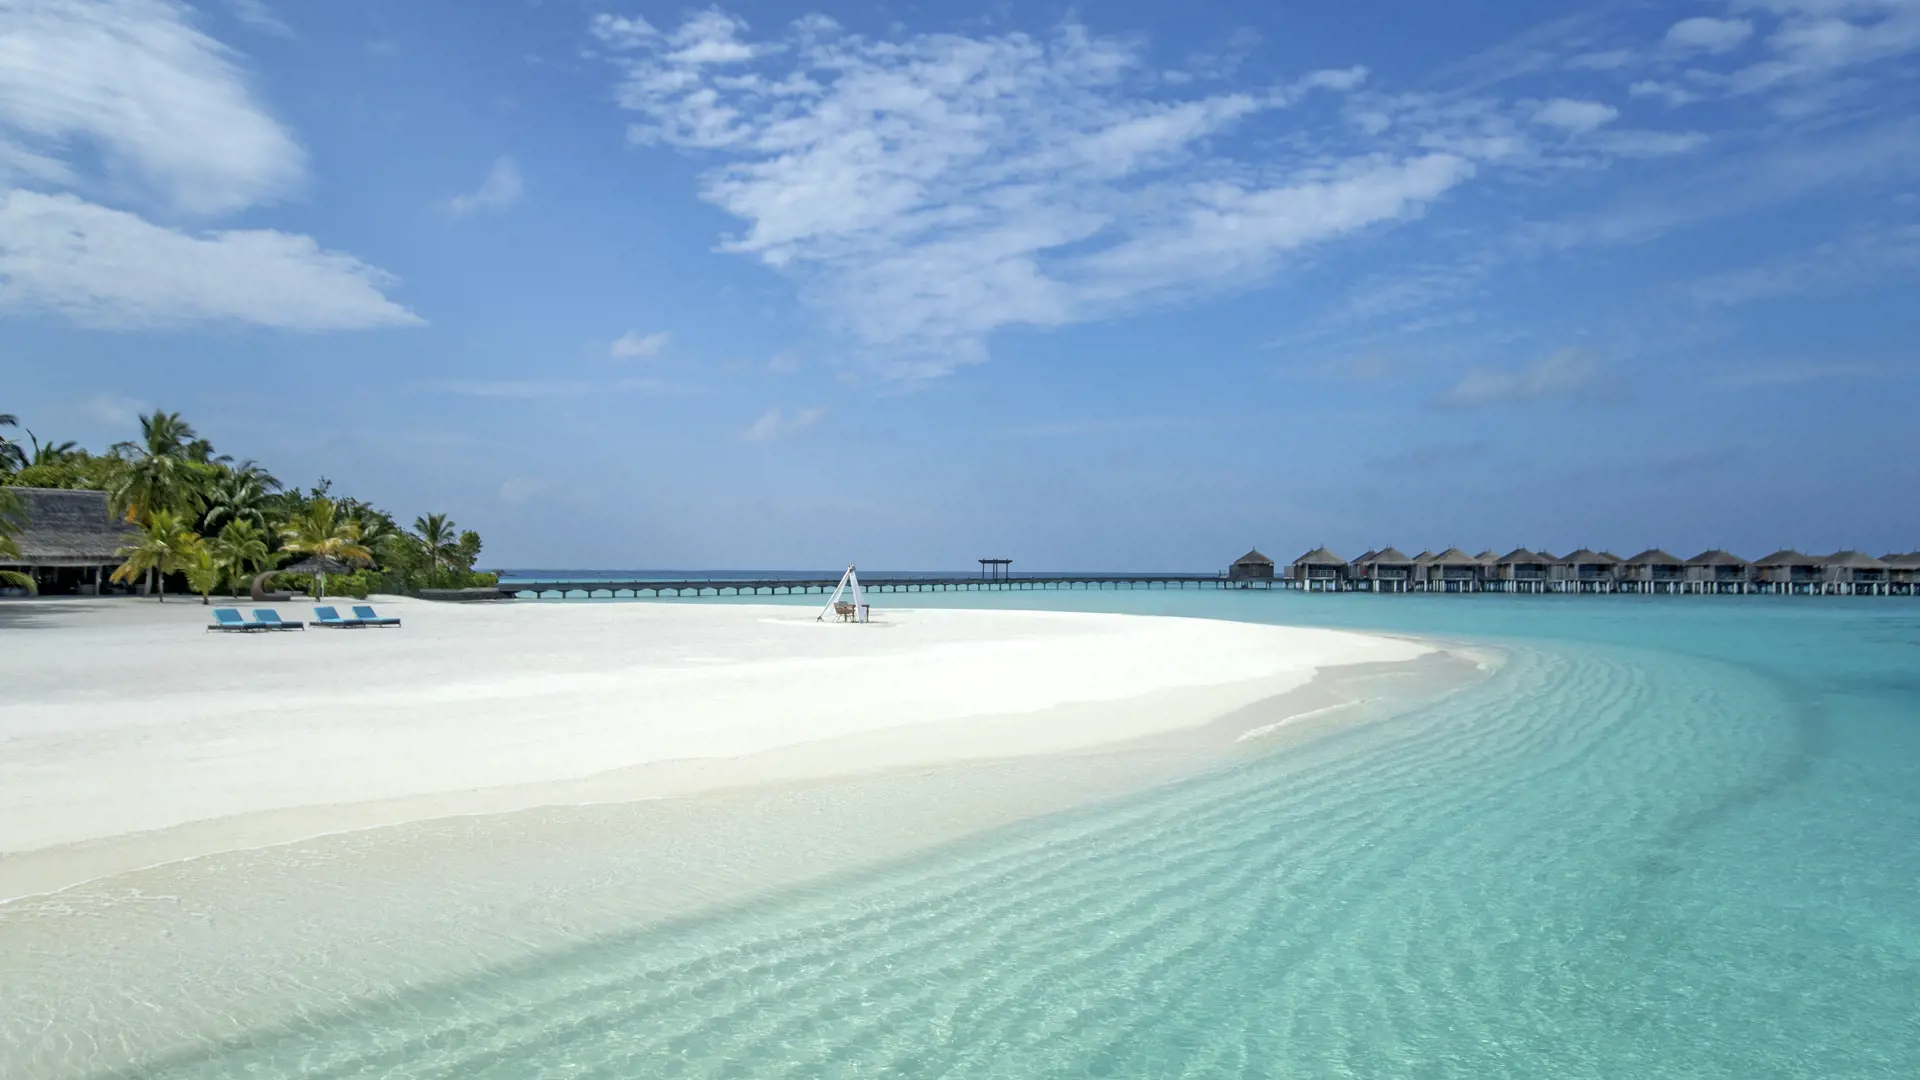 Moofushi Maldives 2021 Bs Beach 12 Hd